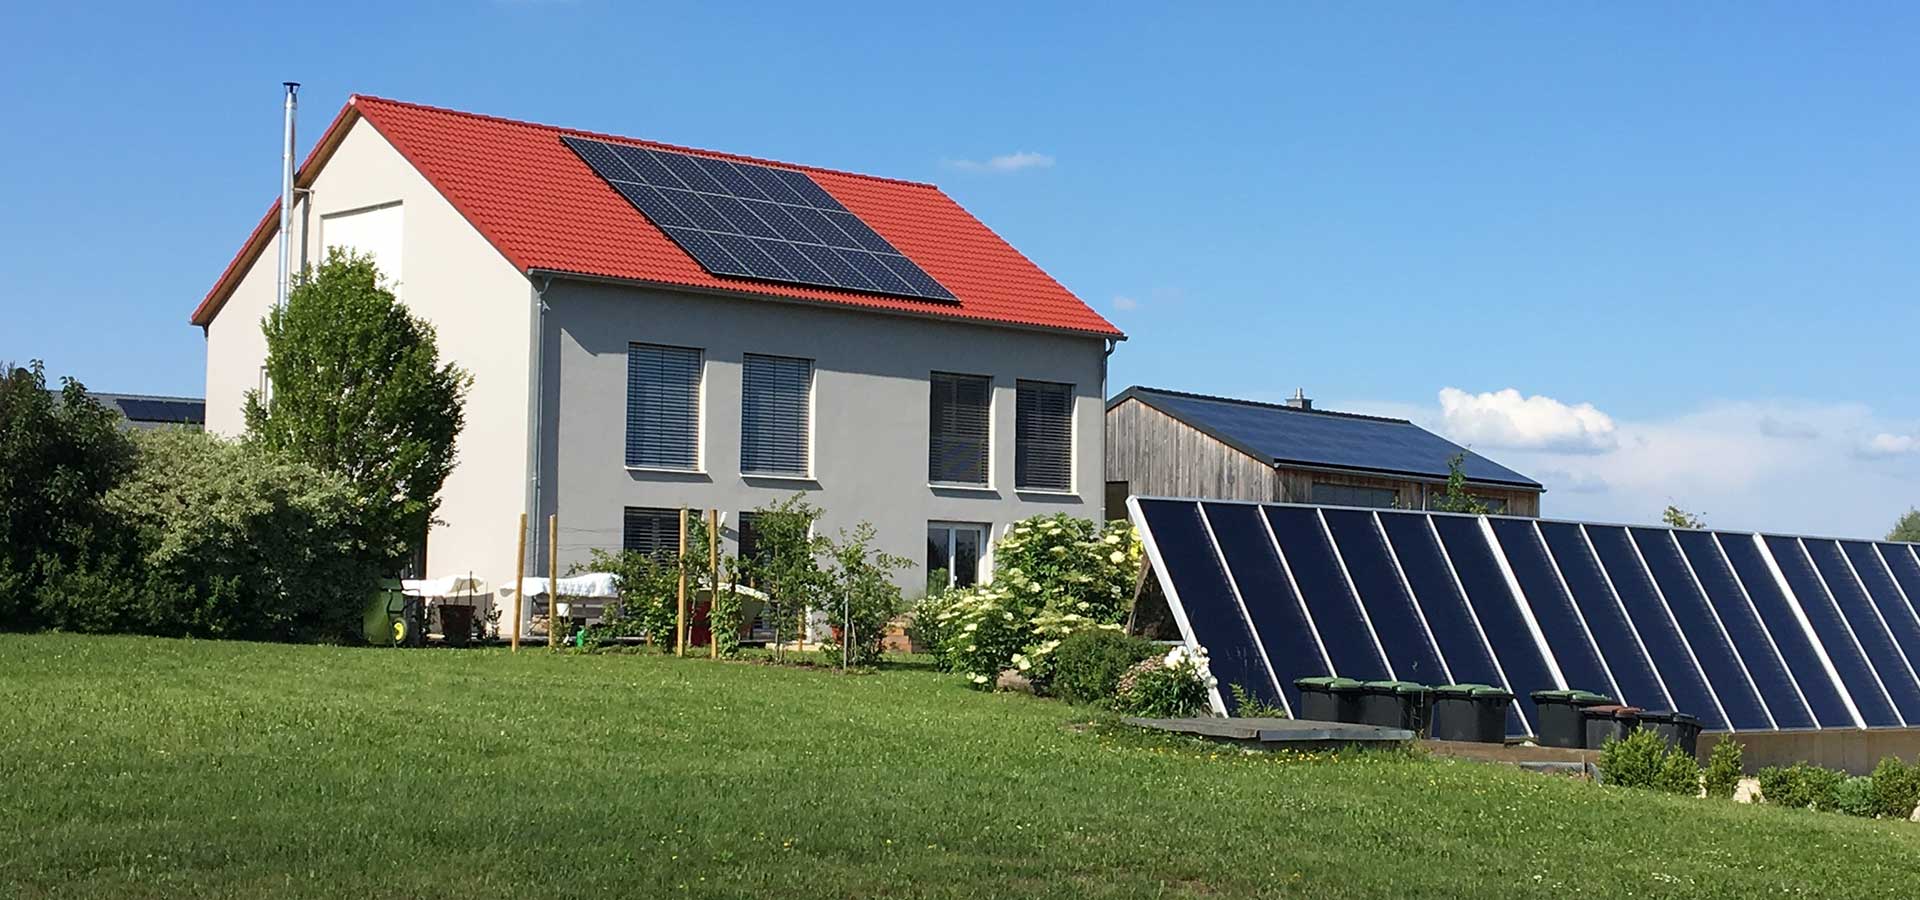 photovoltaik-anlage-deckt-energieeigenbedarf